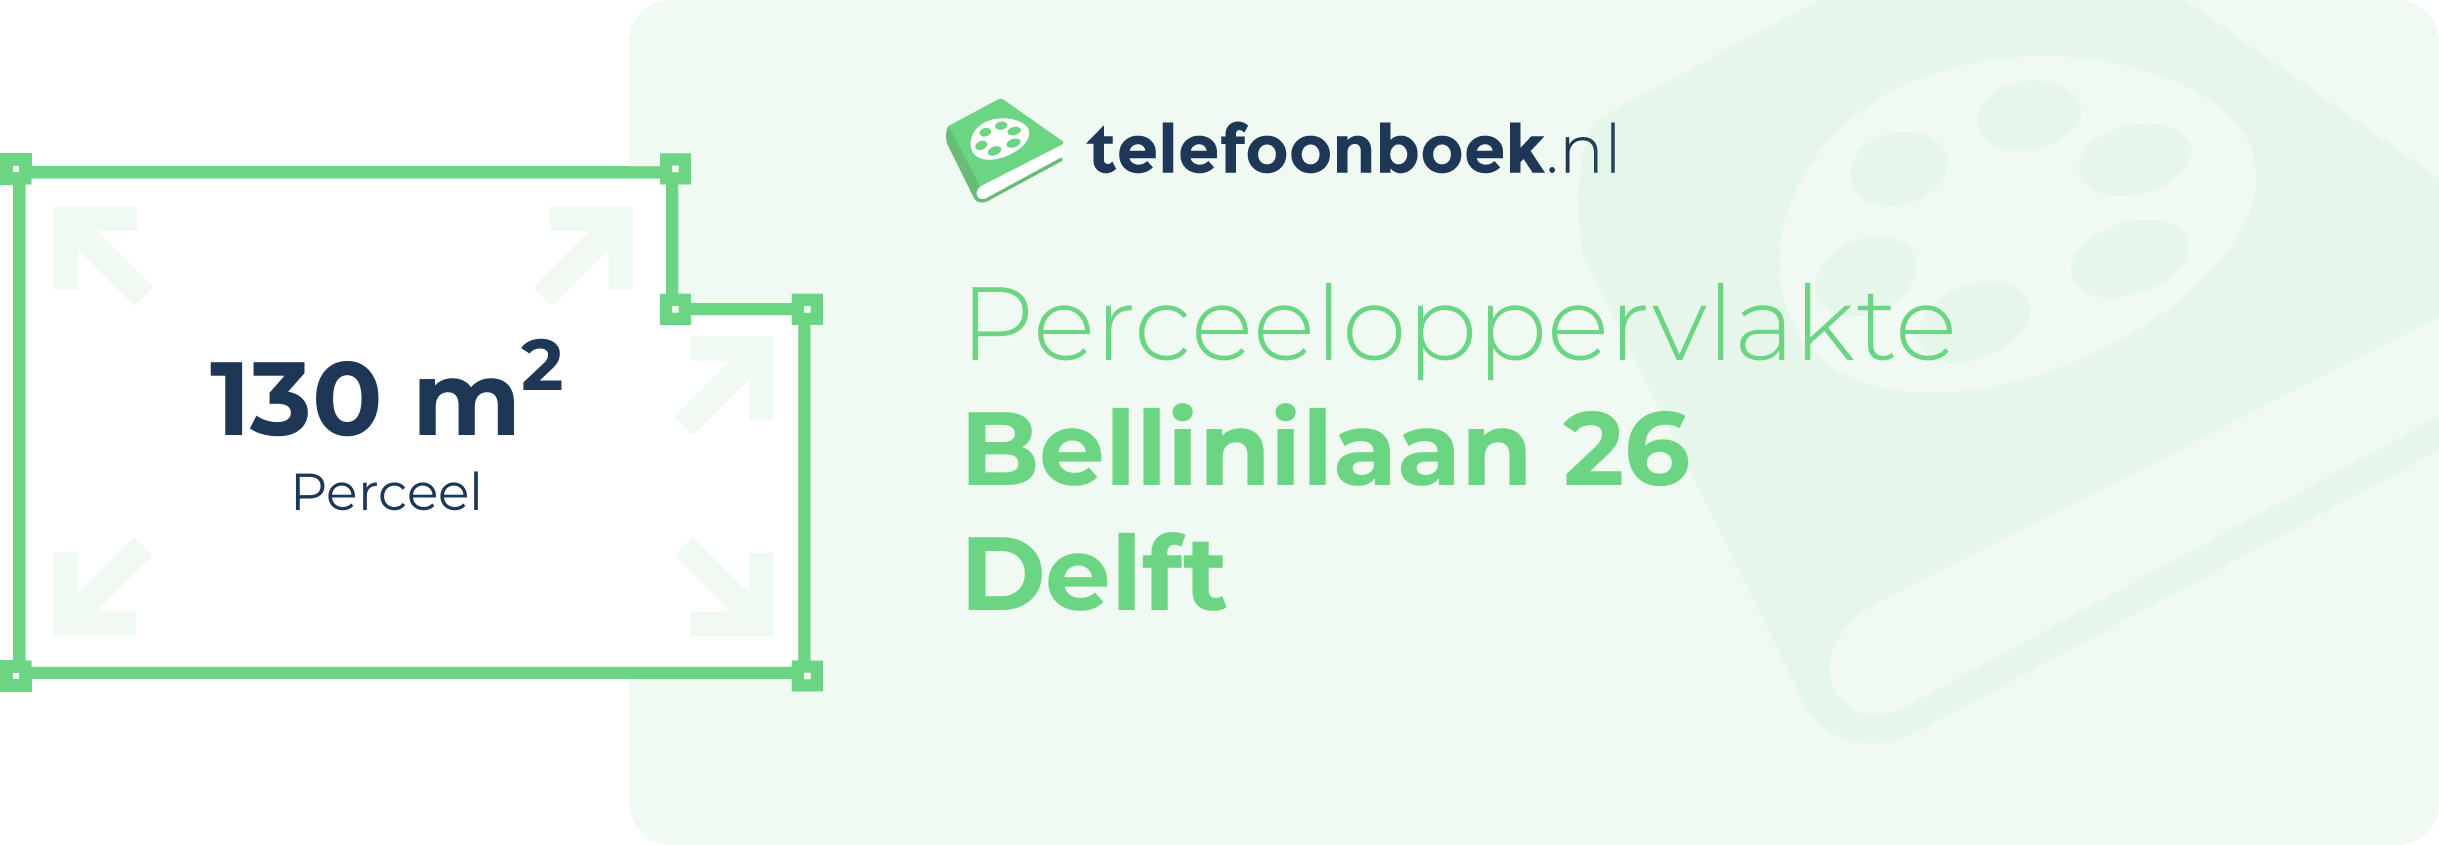 Perceeloppervlakte Bellinilaan 26 Delft